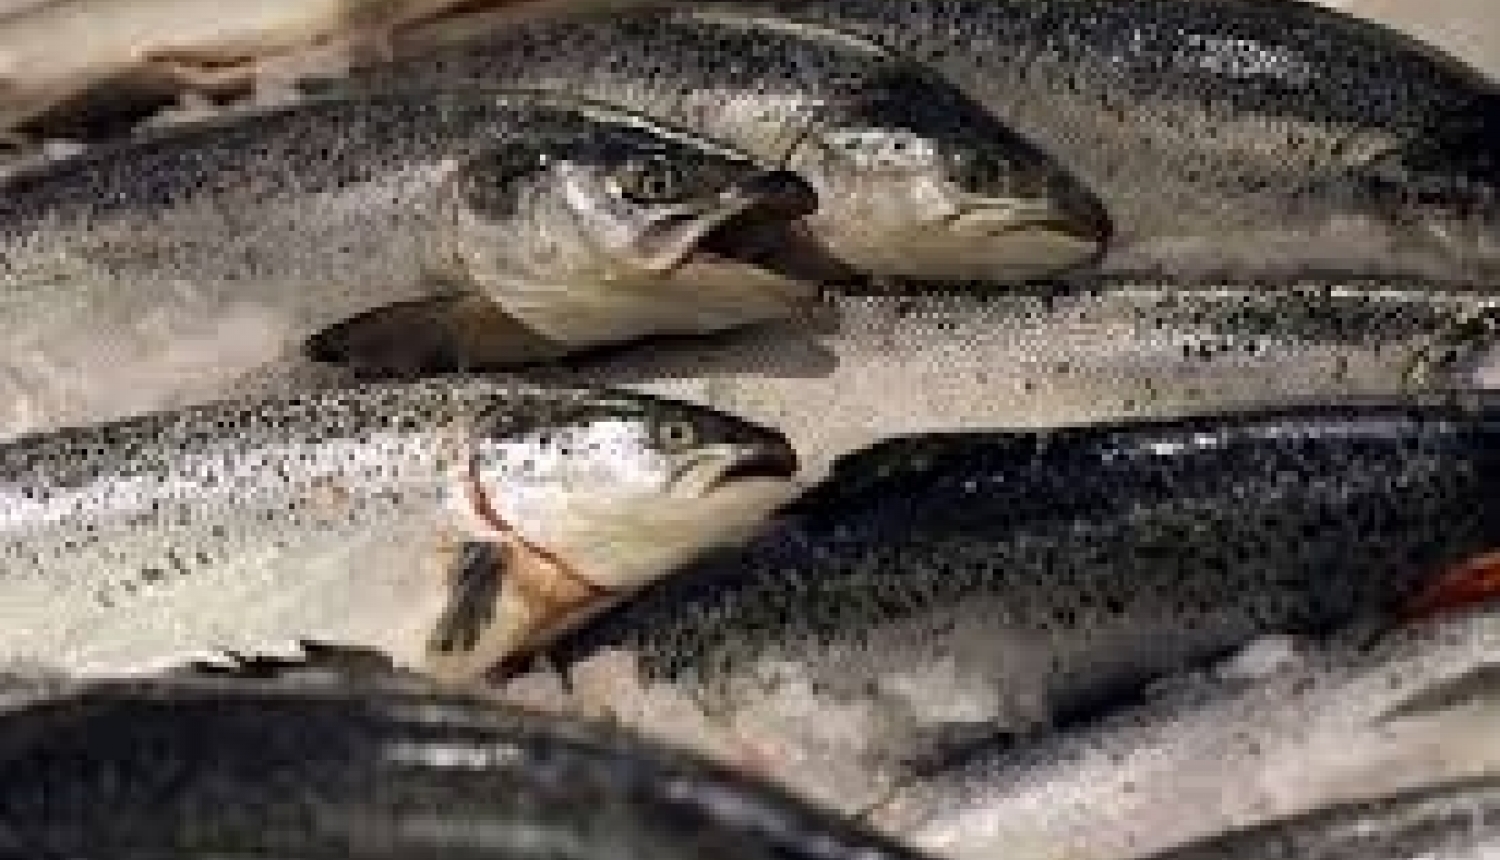 Par 2020.gada zvejas rīku skaita pieprasījumu un rūpnieciskās zvejas tiesību nomu